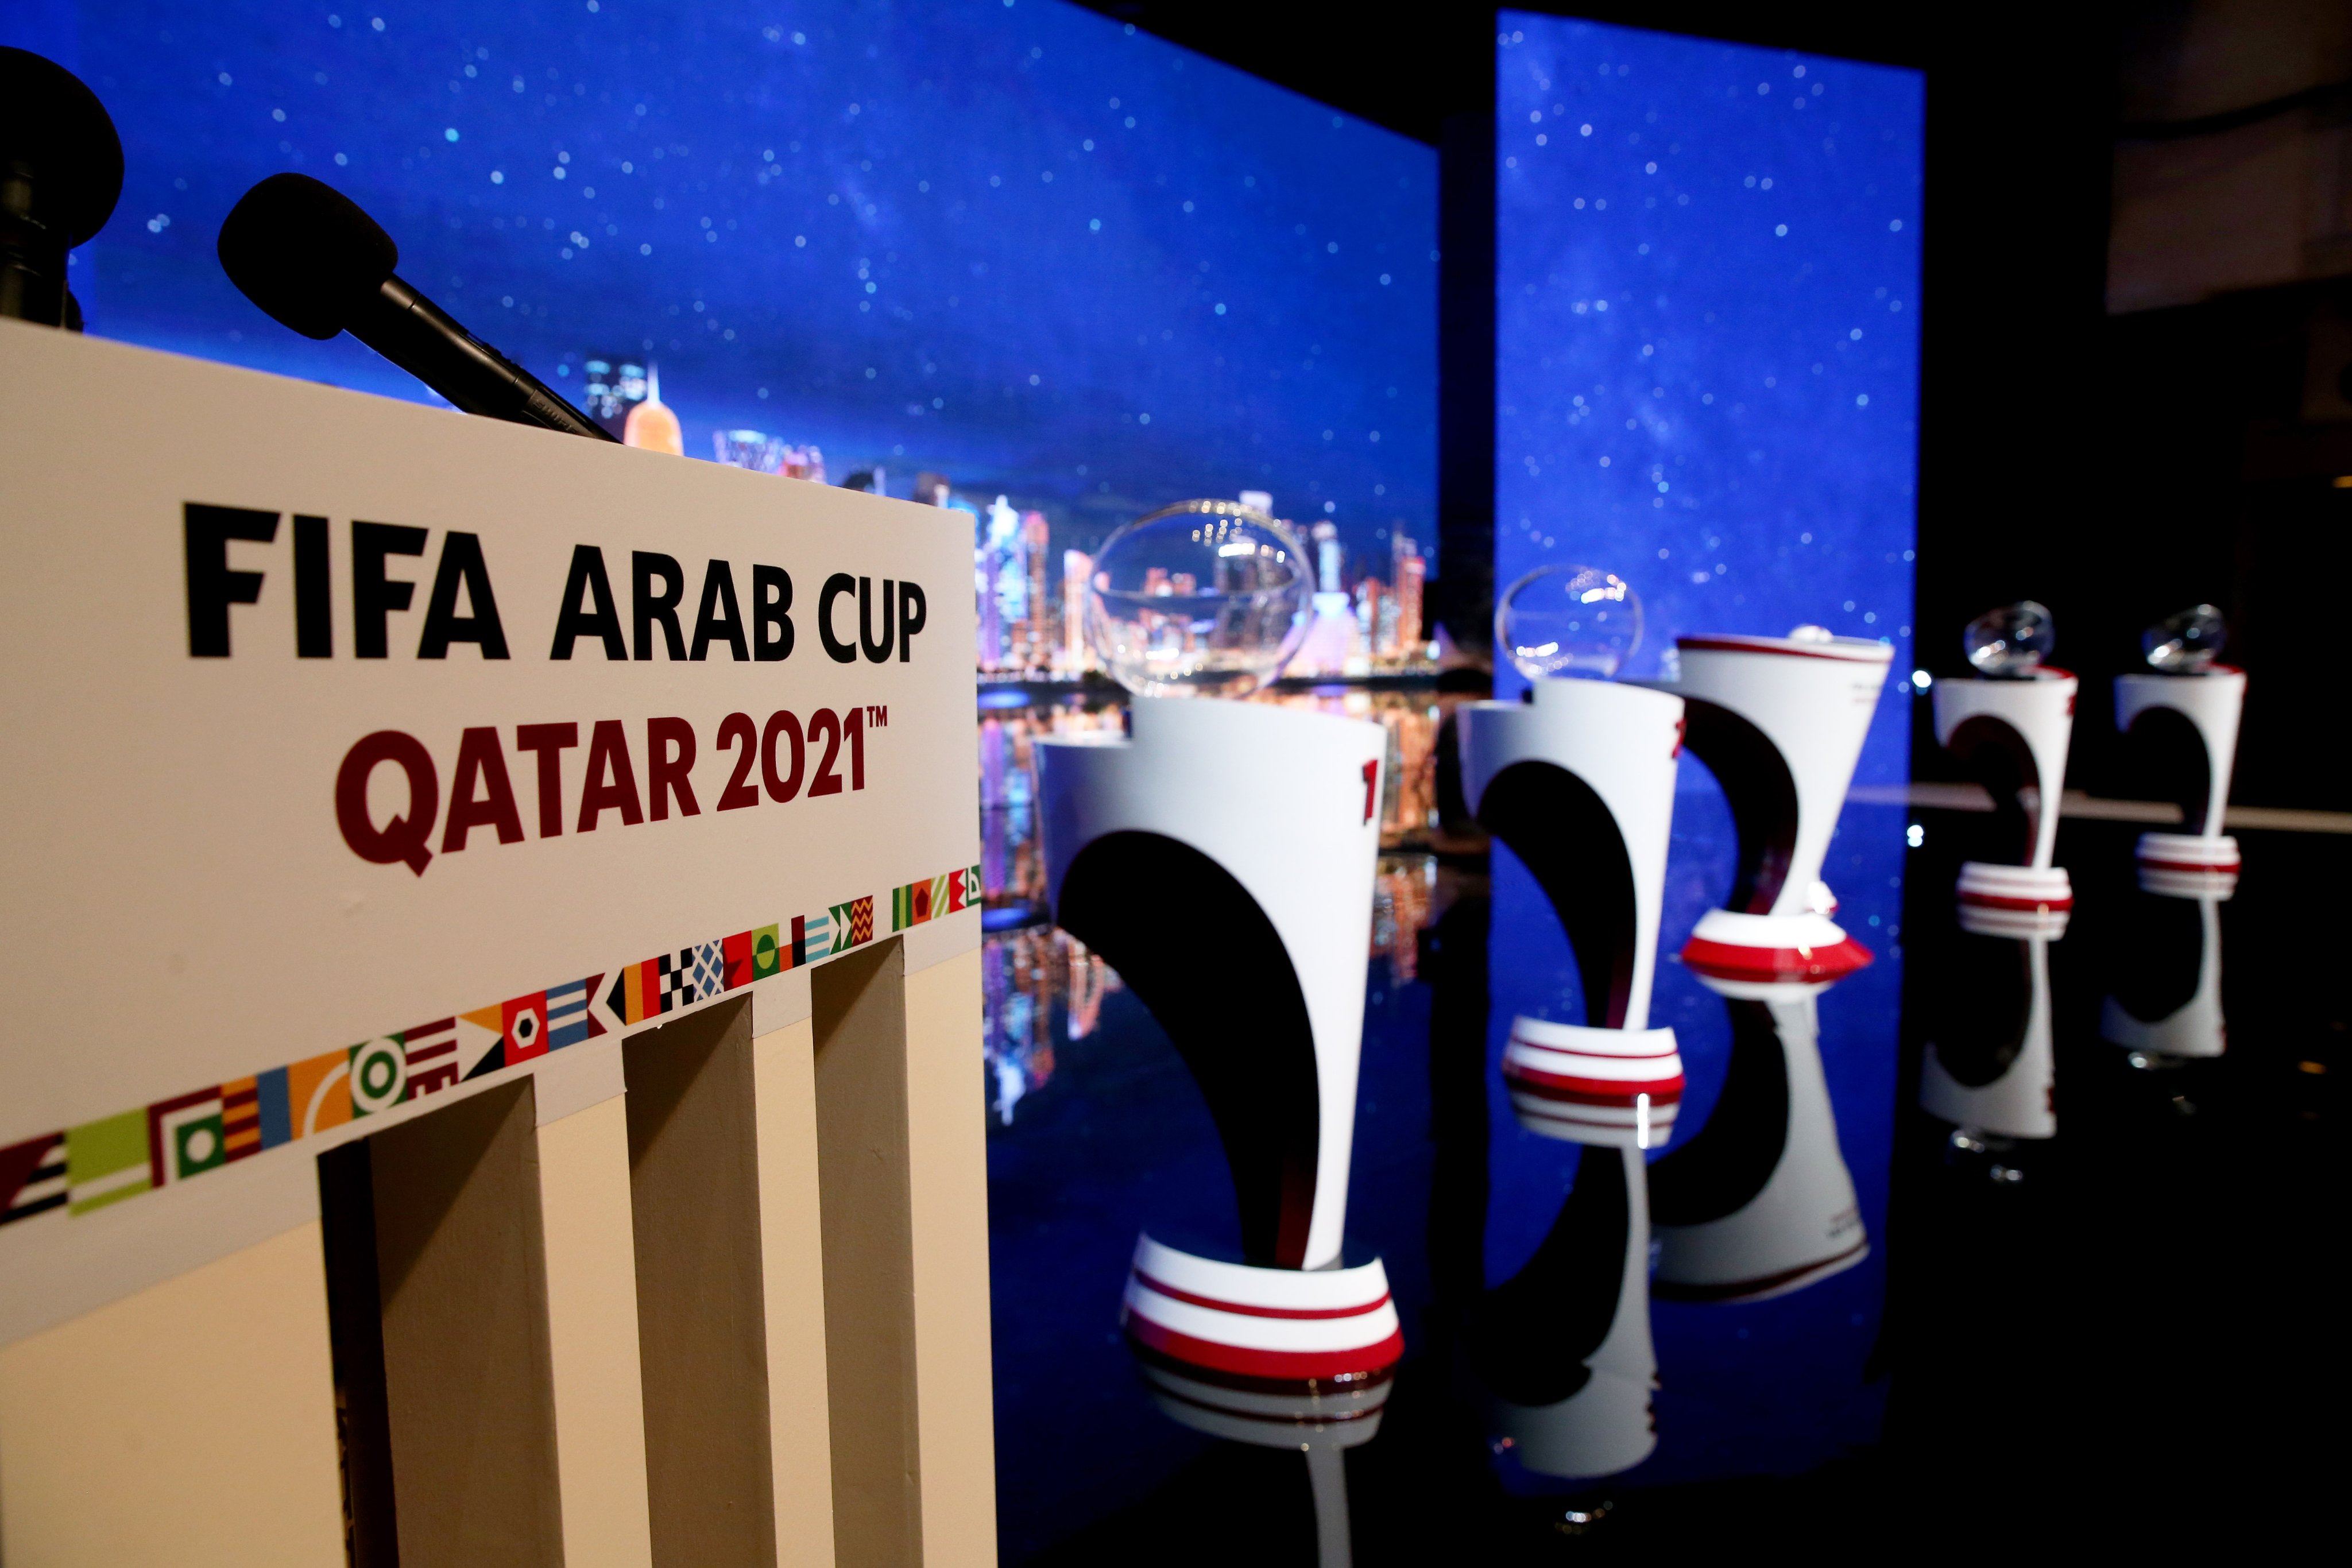 كل ما تريد معرفته عن بطولة  كأس العرب 2021 في قطر
